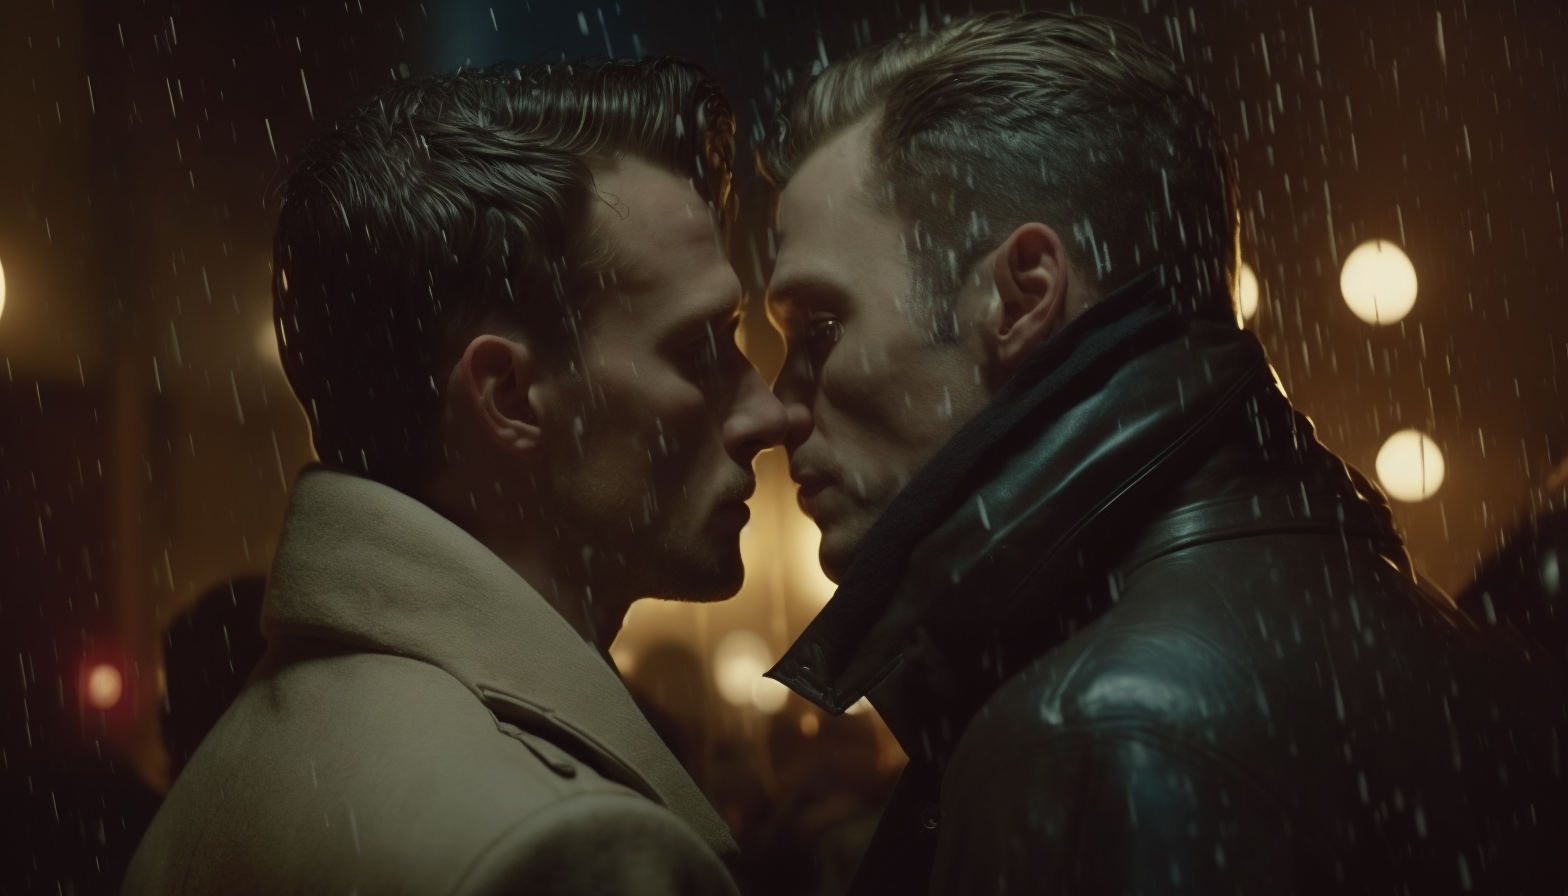 Чувственный гей-клип: поцелуи под луной и под дождём